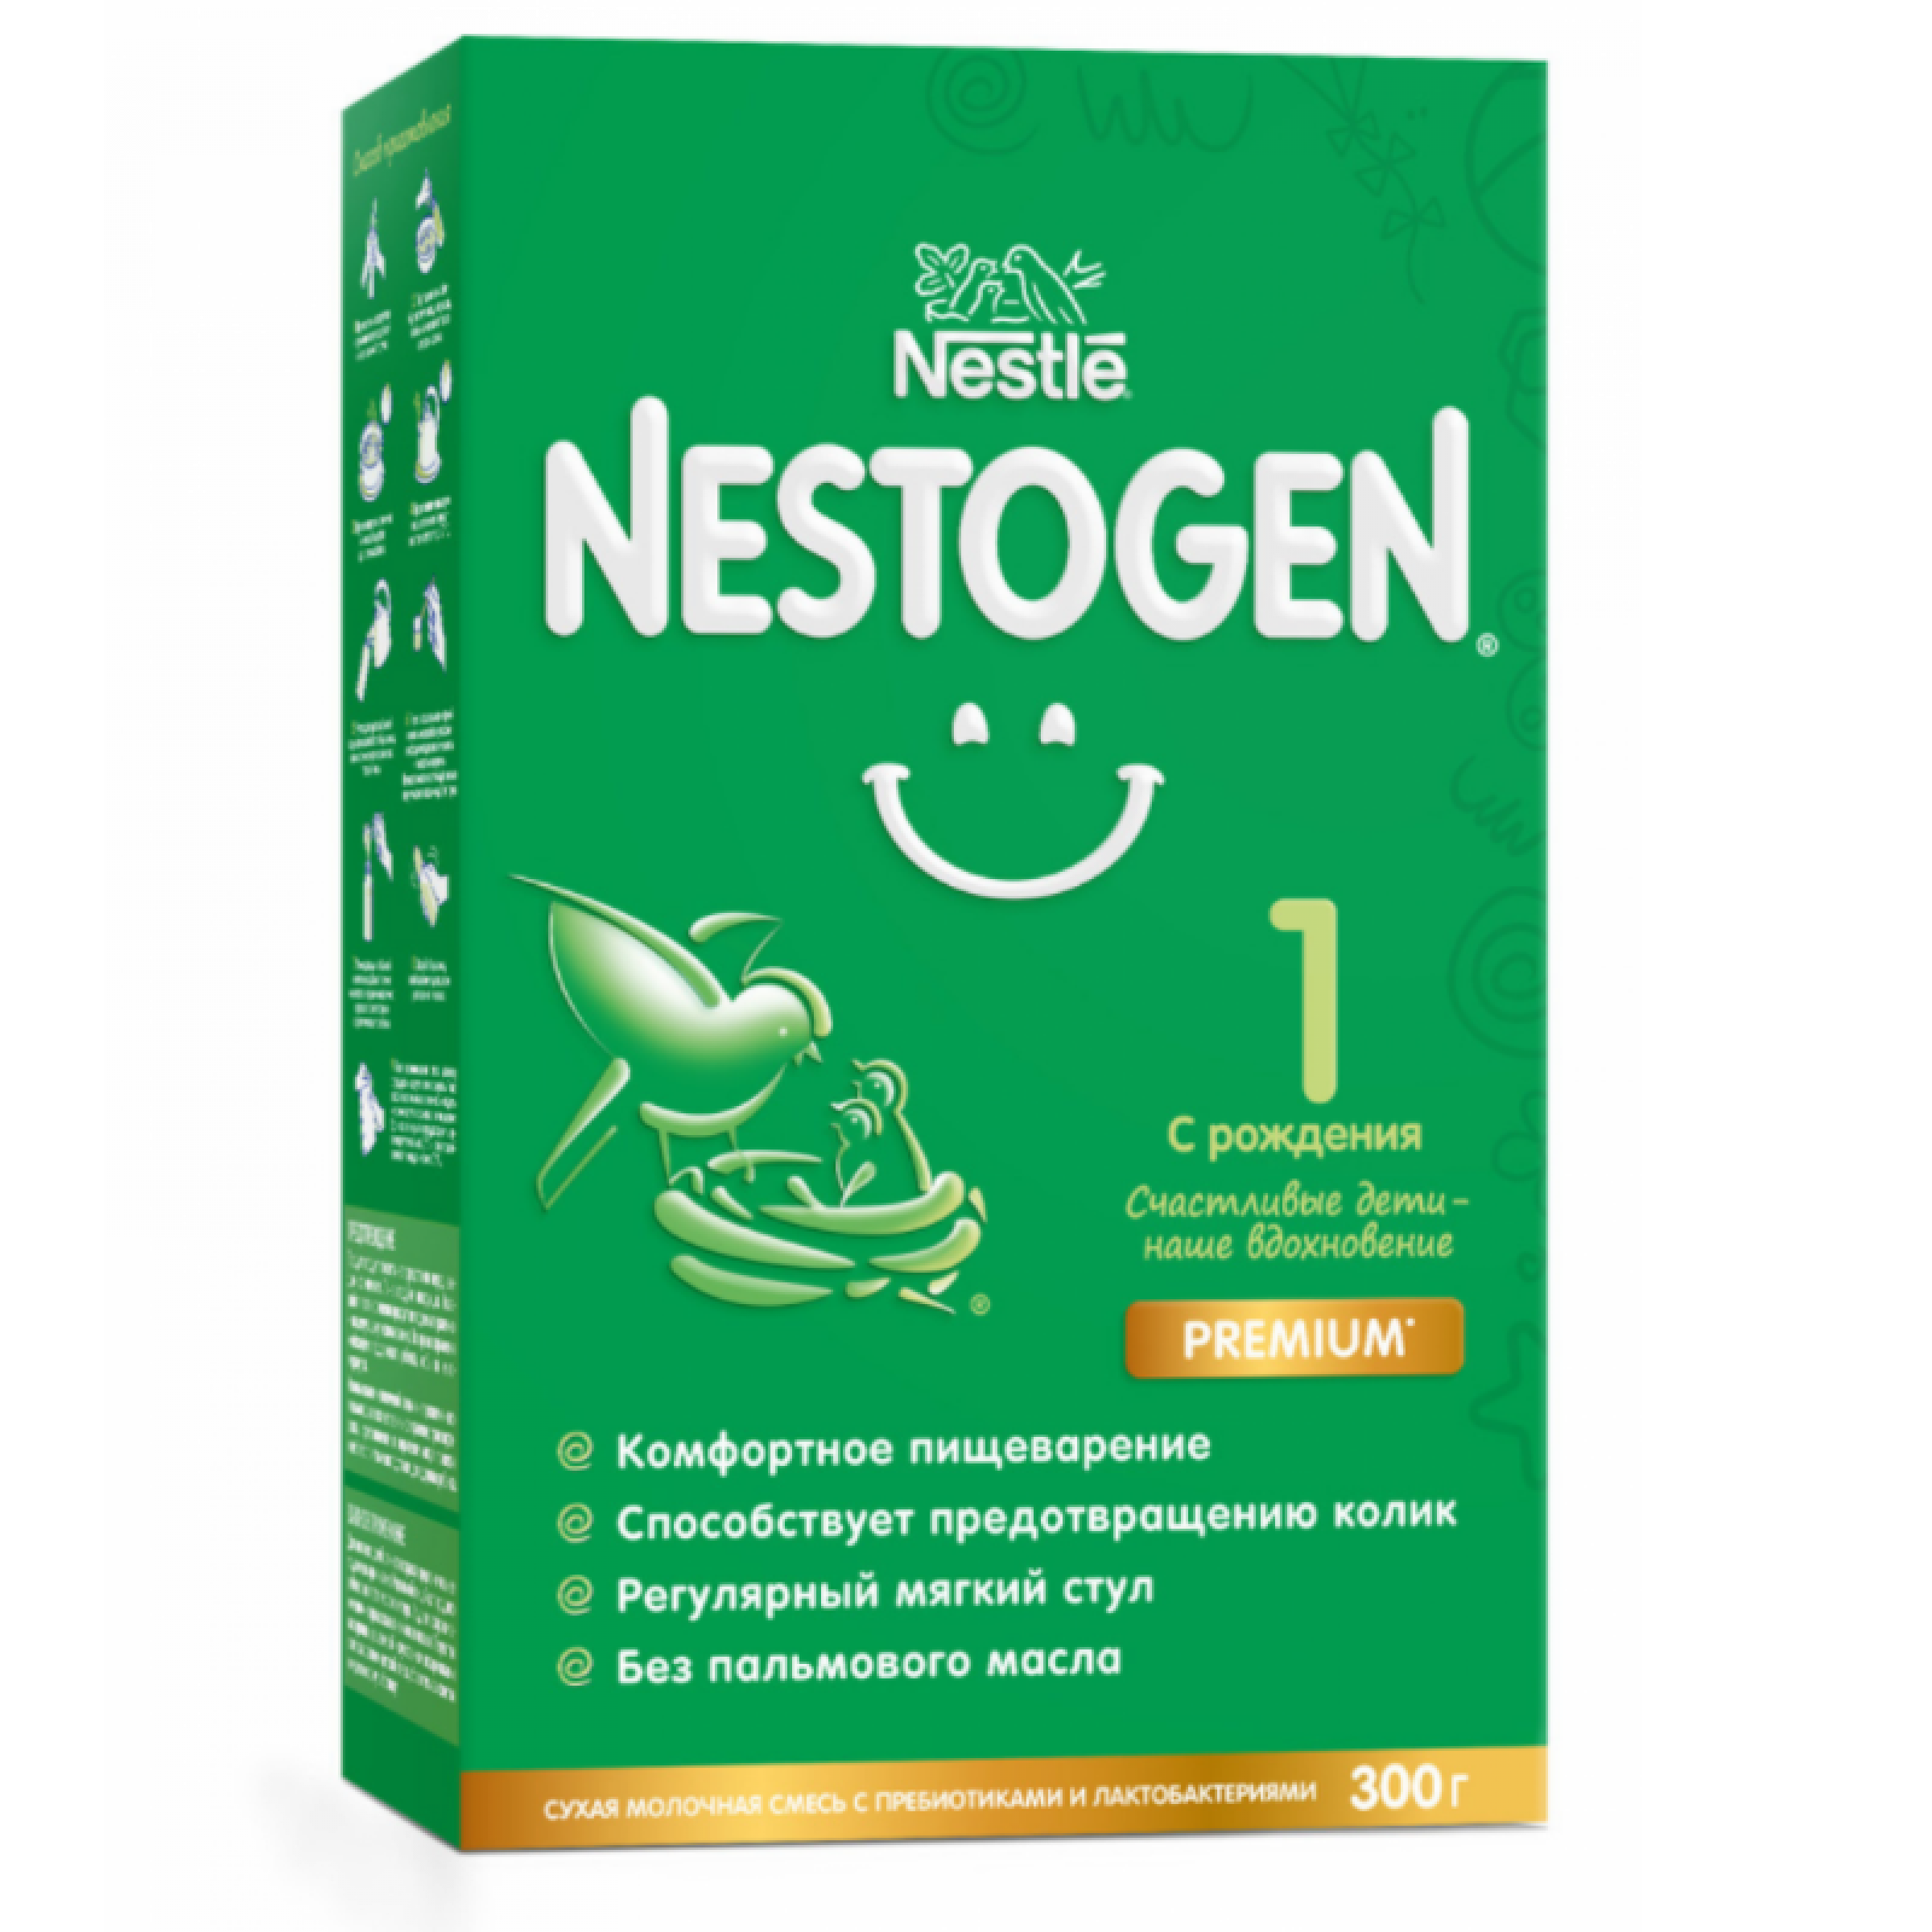 Молочная смесь Nestogen 1 для новорожденных, 300гр.